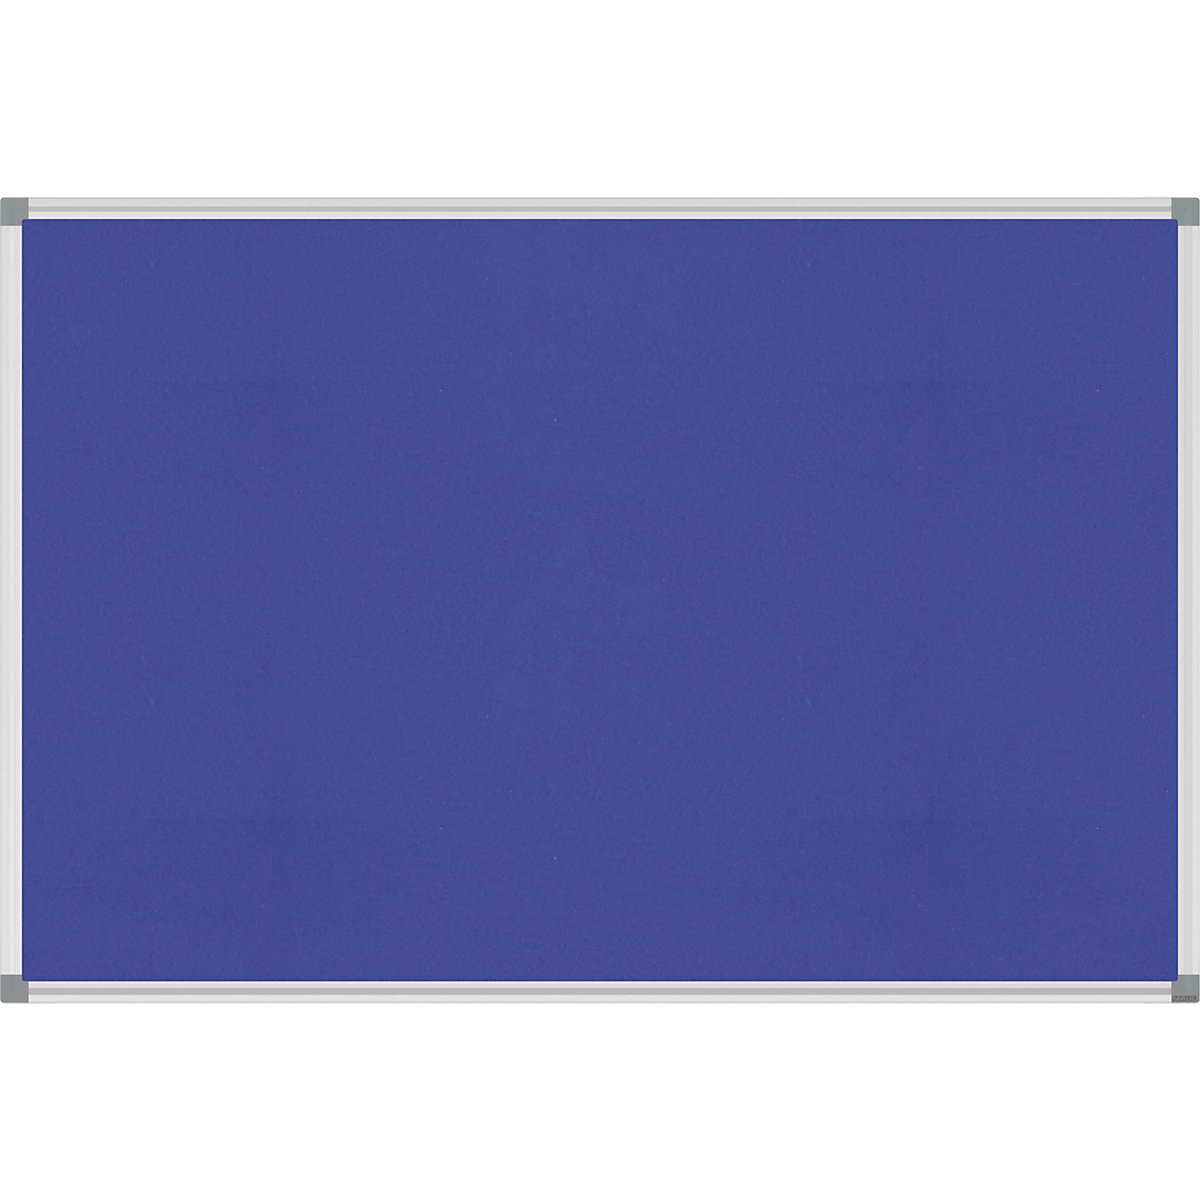 Tableau à épingler STANDARD – MAUL, habillage feutre, bleu, l x h 900 x 600 mm-3